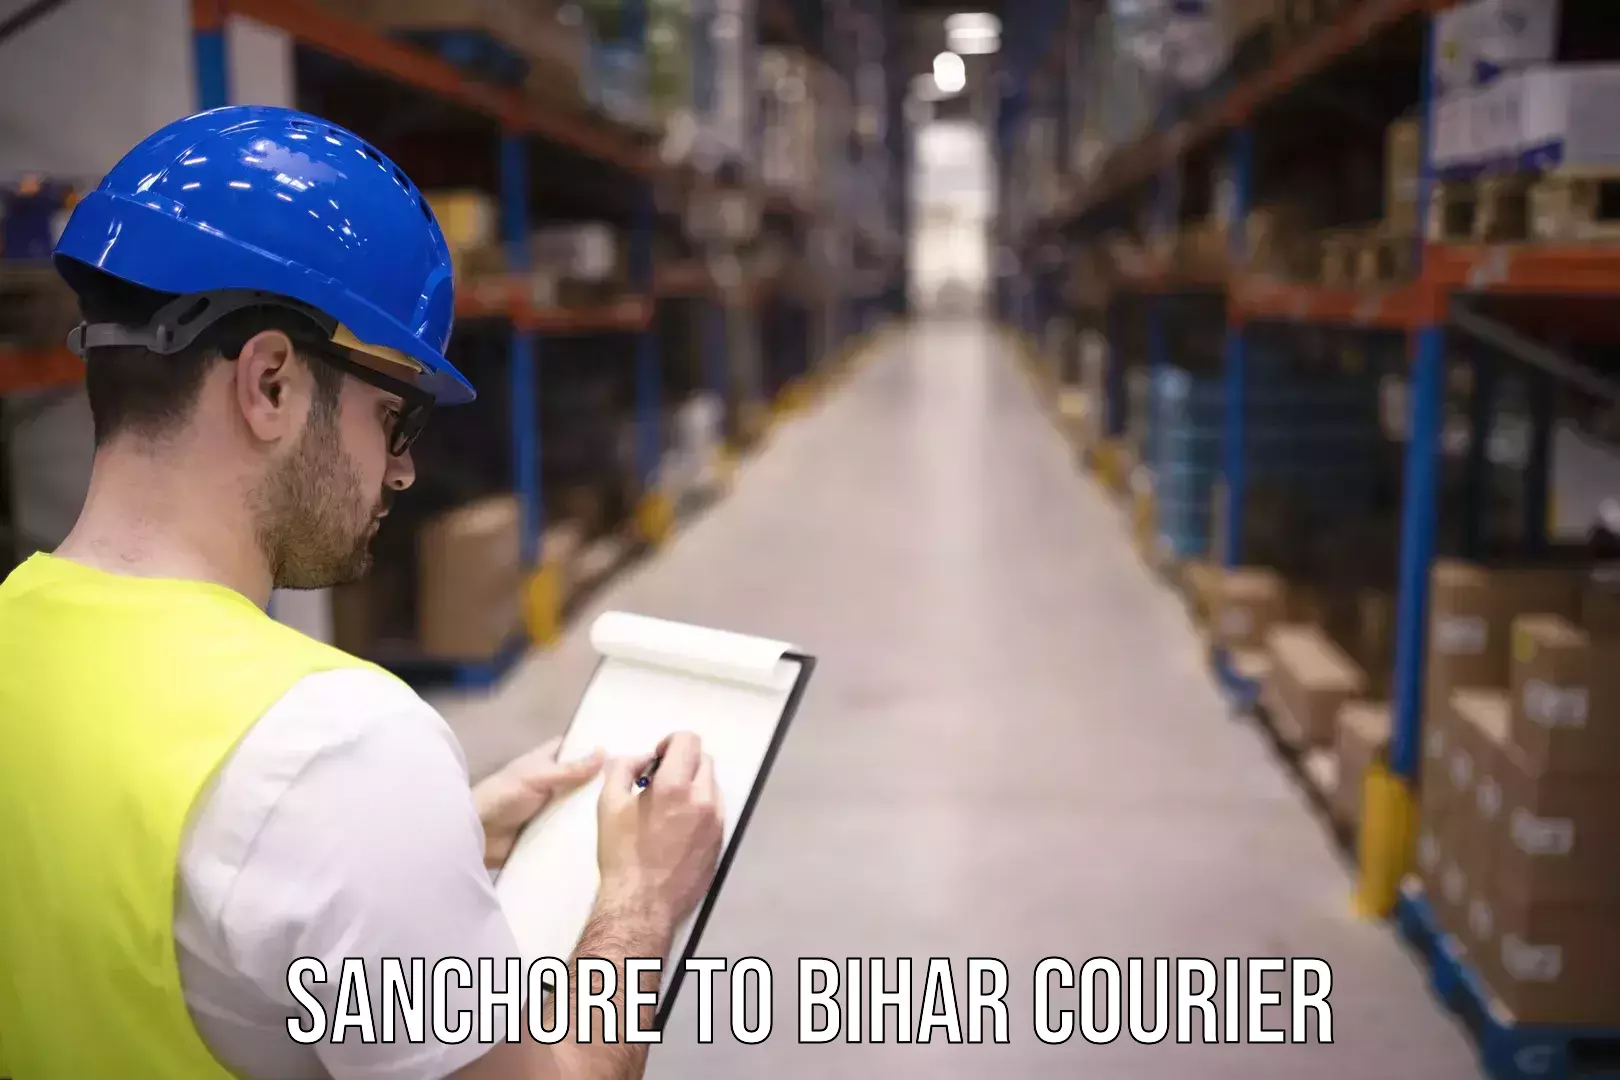 Express courier facilities Sanchore to Bihar